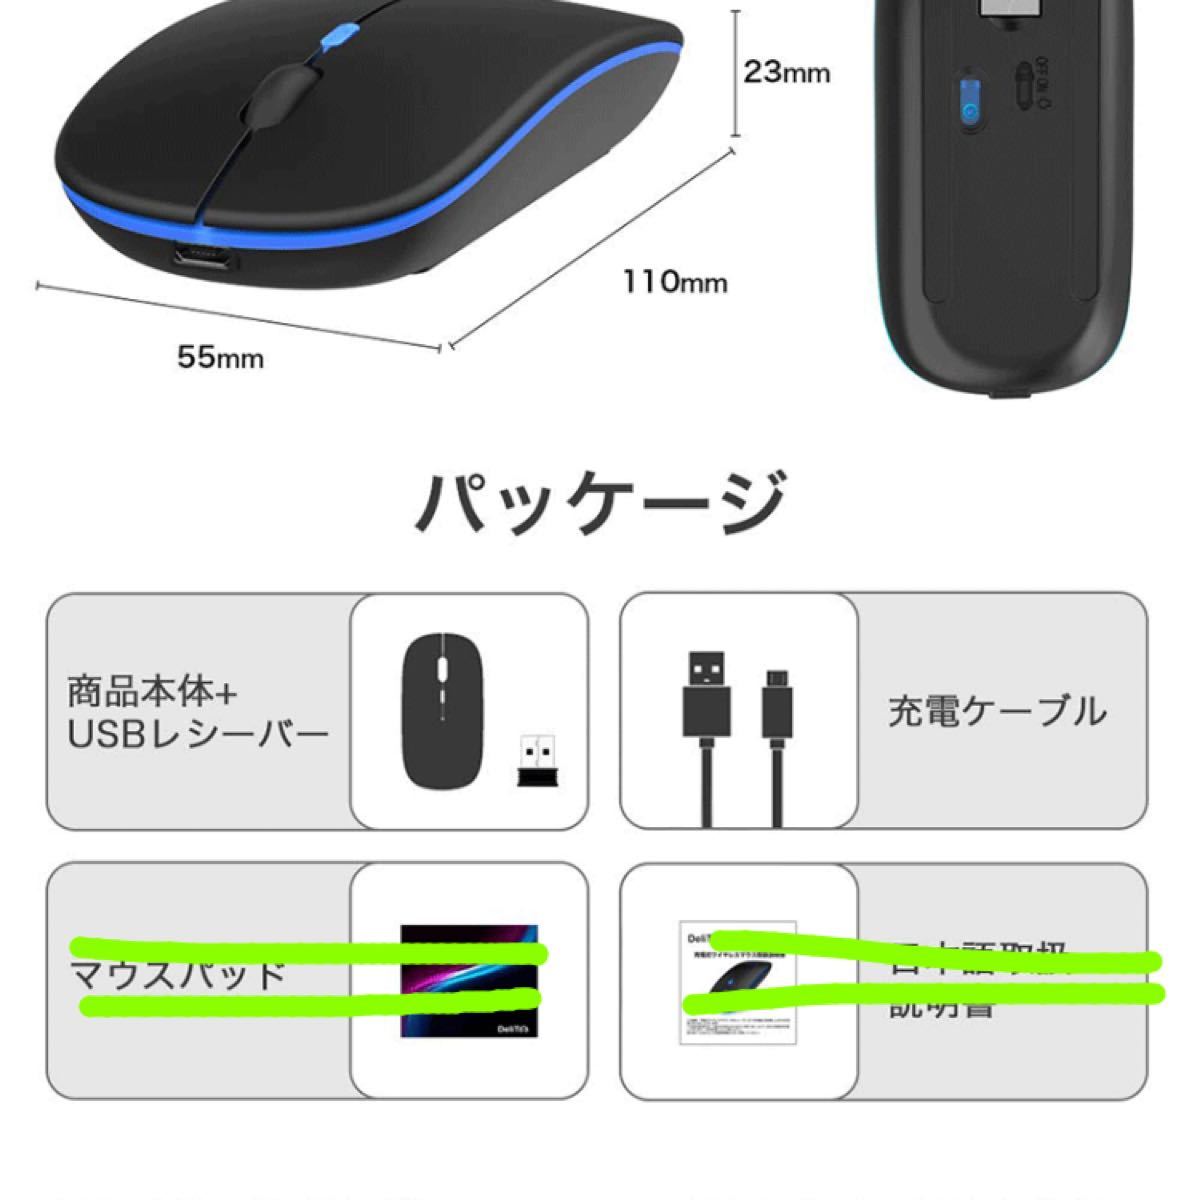 ワイヤレスマウス マウス ワイヤレス 充電式 静音 7色ライ付 無線 薄型 軽量 USB 光学式 マウス 省エネルギー 高効率 